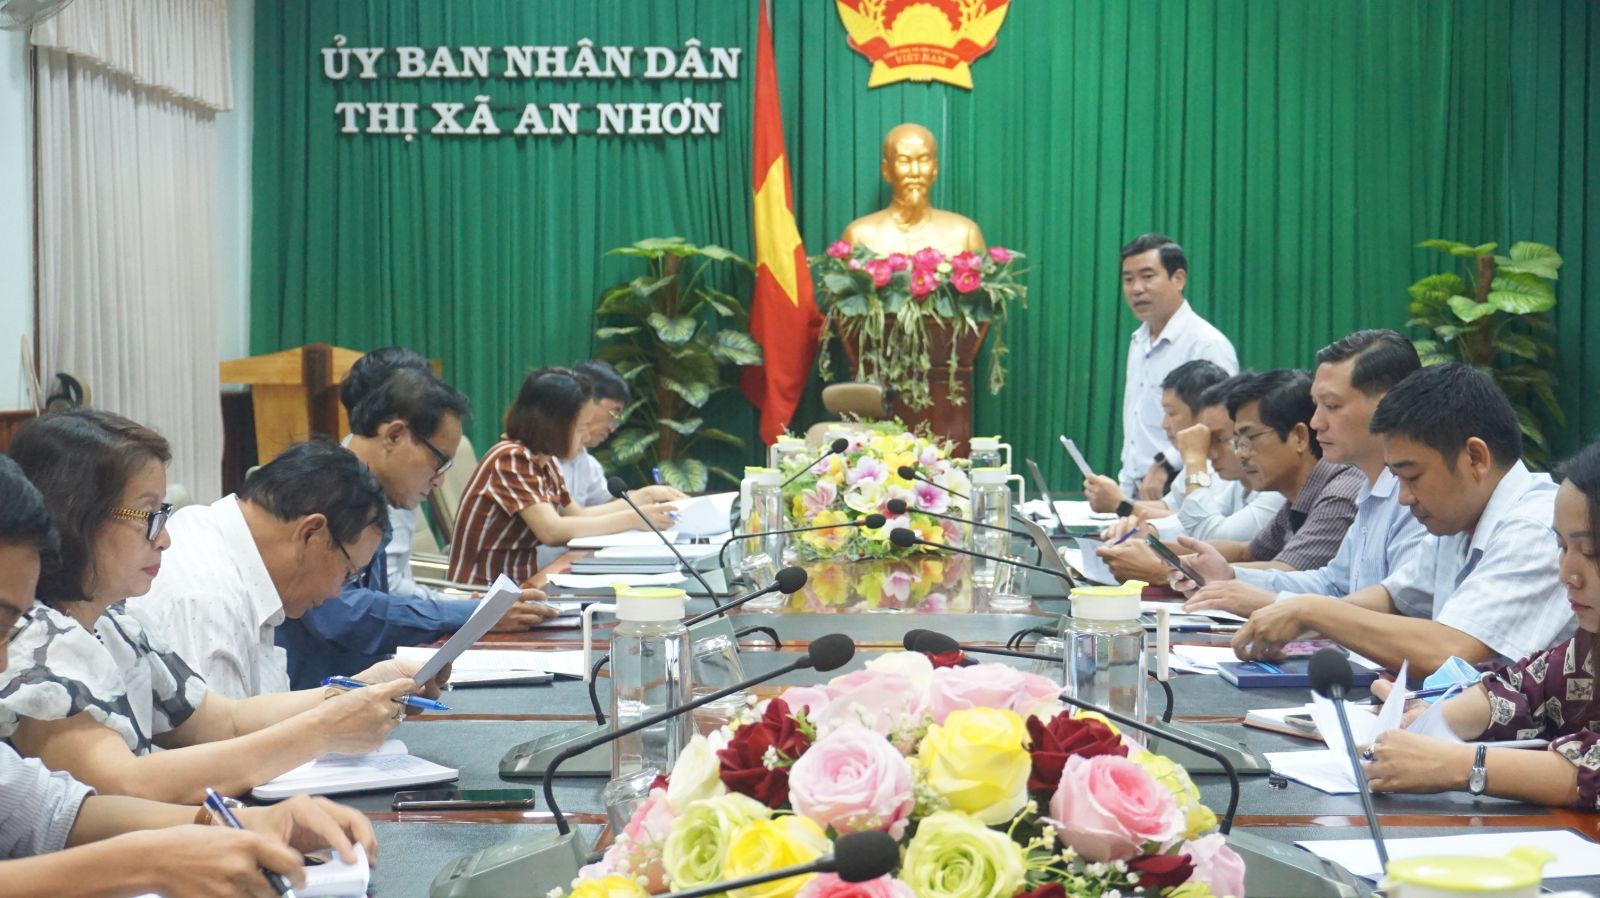 Phó Giám đốc Sở KH&CN Nguyễn Hữu Hà đánh giá cao nỗ lực của TX An Nhơn trong việc thúc đẩy Trung tâm điều hành đô thị thông minh của thị xã. Ảnh: HH